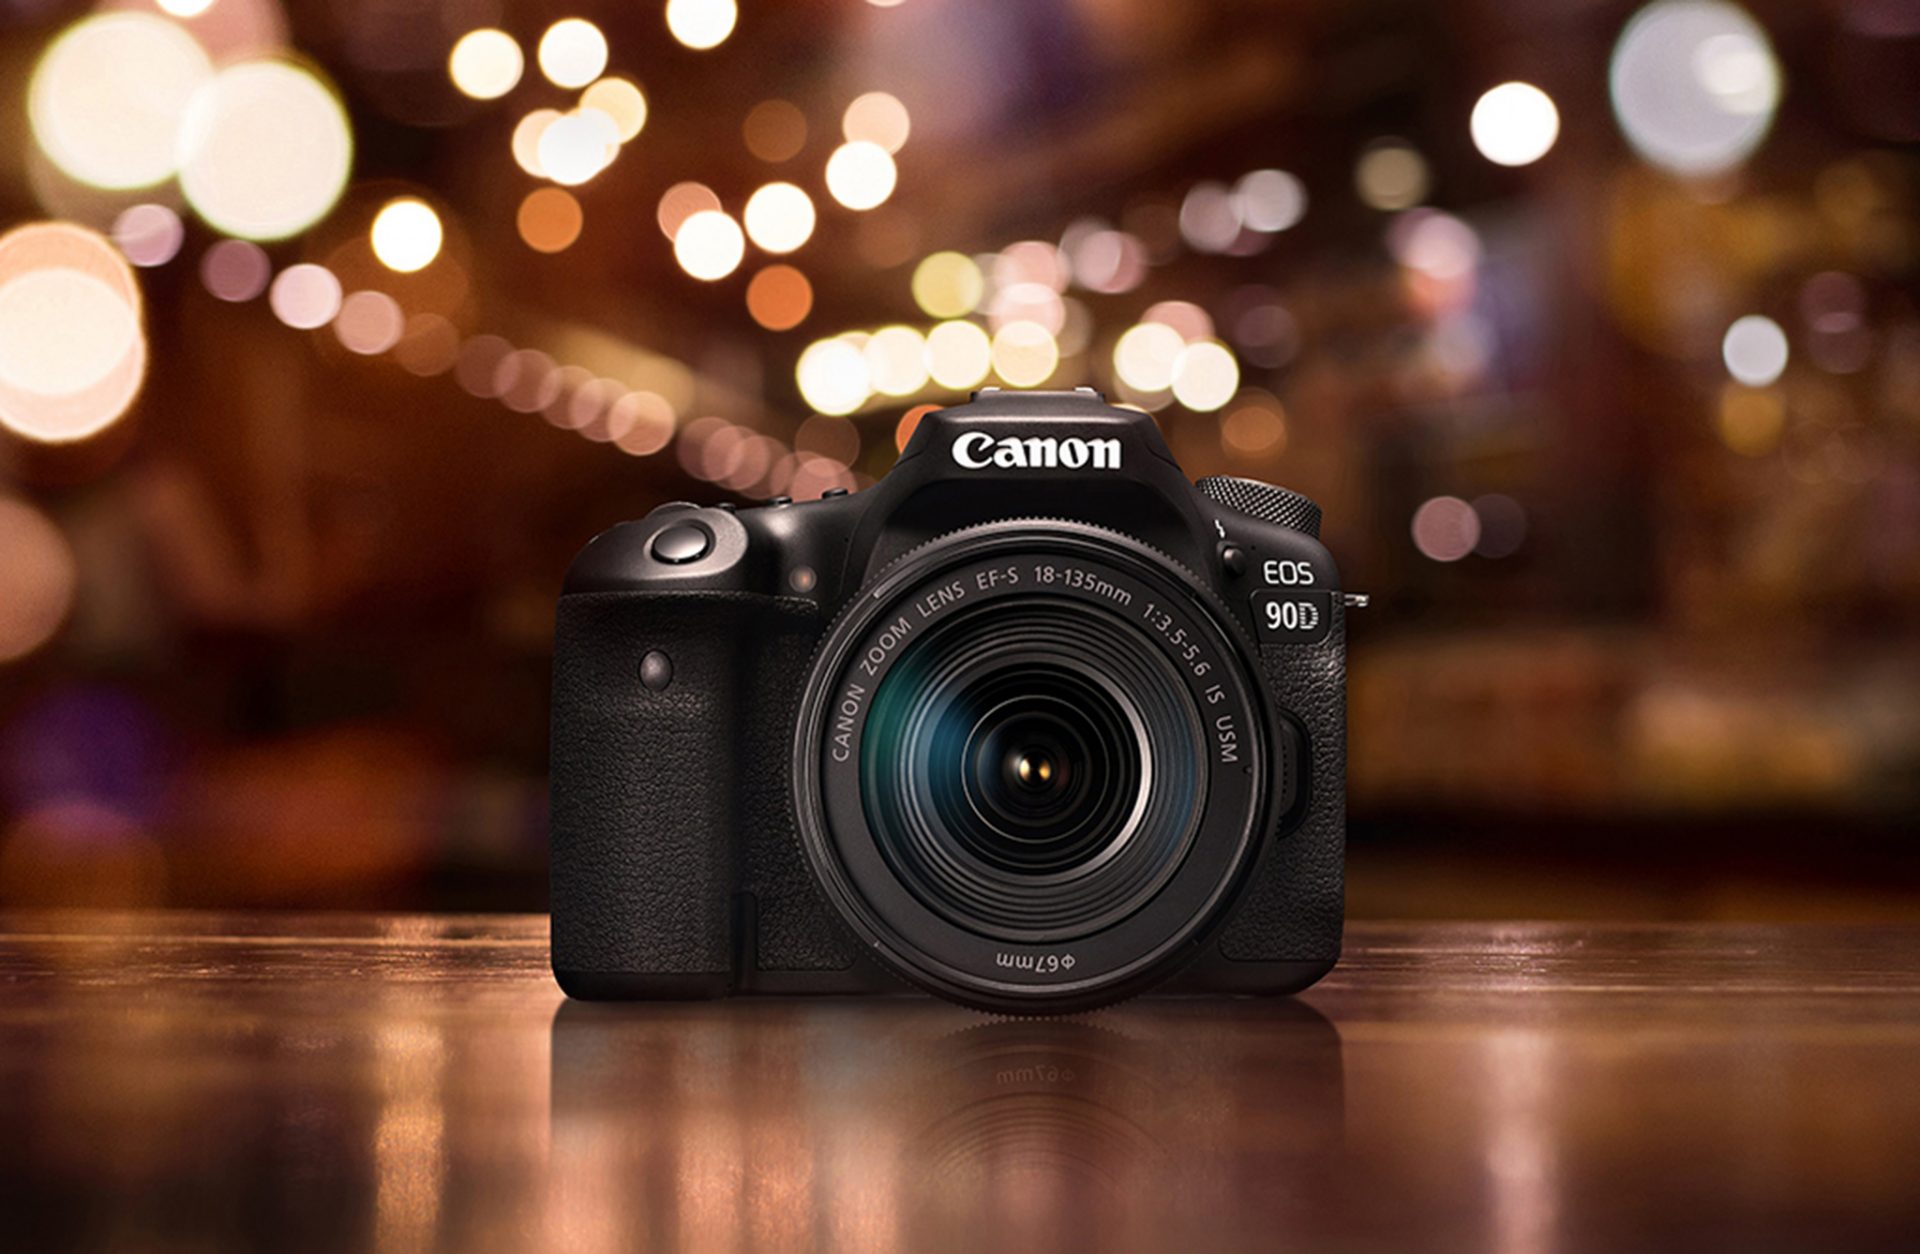 เผยโฉม Canon EOS 90D สุดยอดกล้อง DSLR ระดับกลาง! เป็นหนึ่งในเรื่องโฟกัส ในราคาเริ่มต้น 41,900 บาท